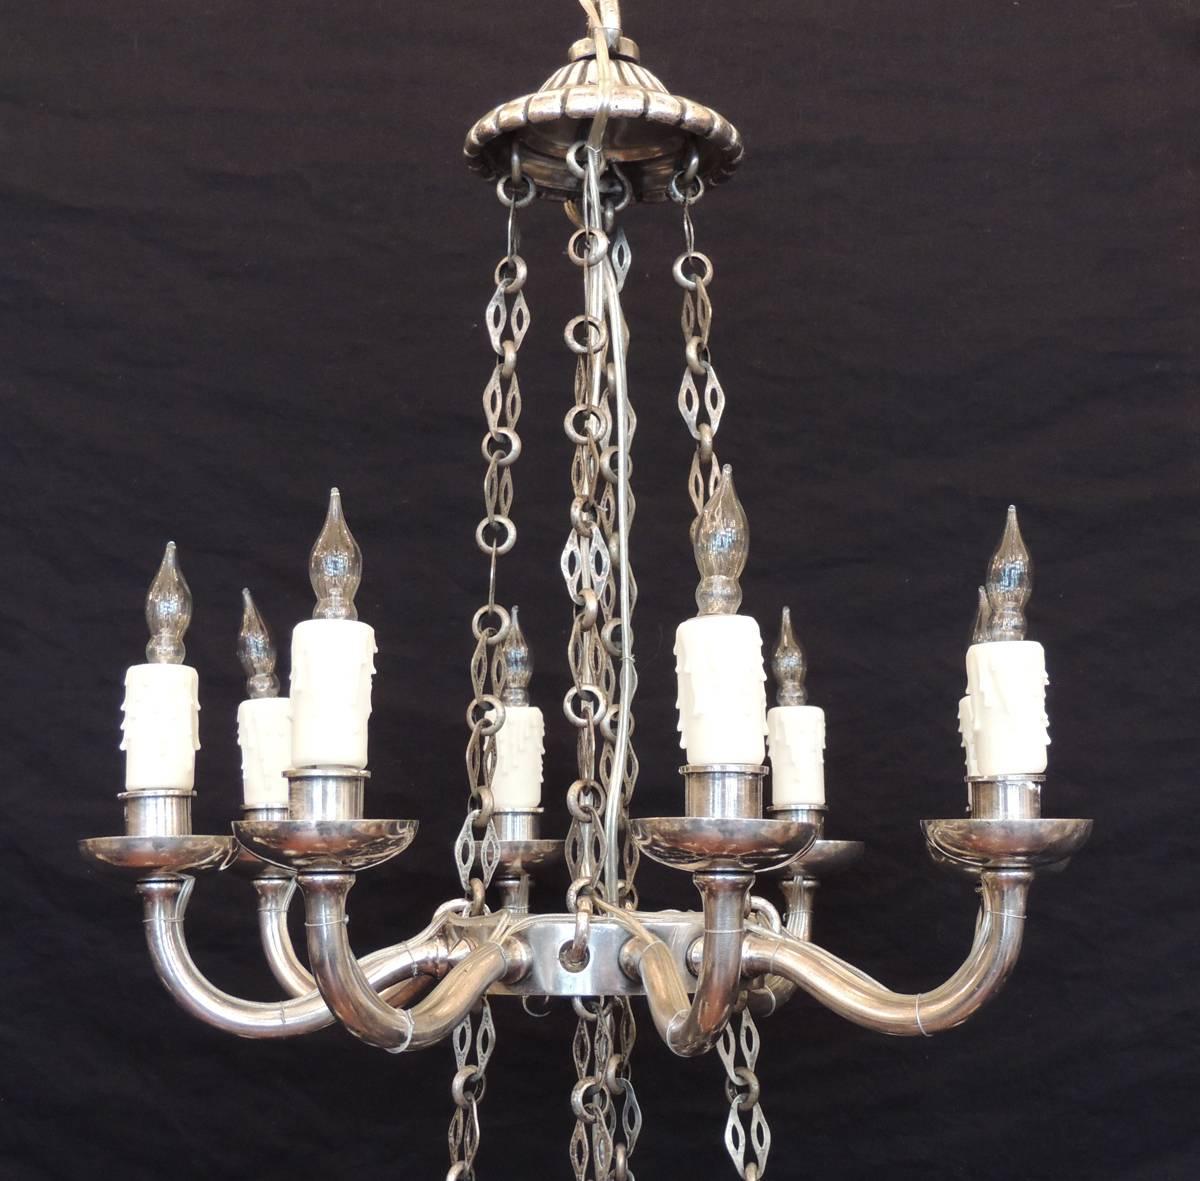 Dieser Kronleuchter wurde in der ersten Hälfte des 19. Jahrhunderts, um 1810, in Italien hergestellt und besteht aus zwei abgestuften Rängen mit insgesamt sechzehn Lichtern. Die beiden Teile werden von vier versilberten Bronzeketten getragen, die